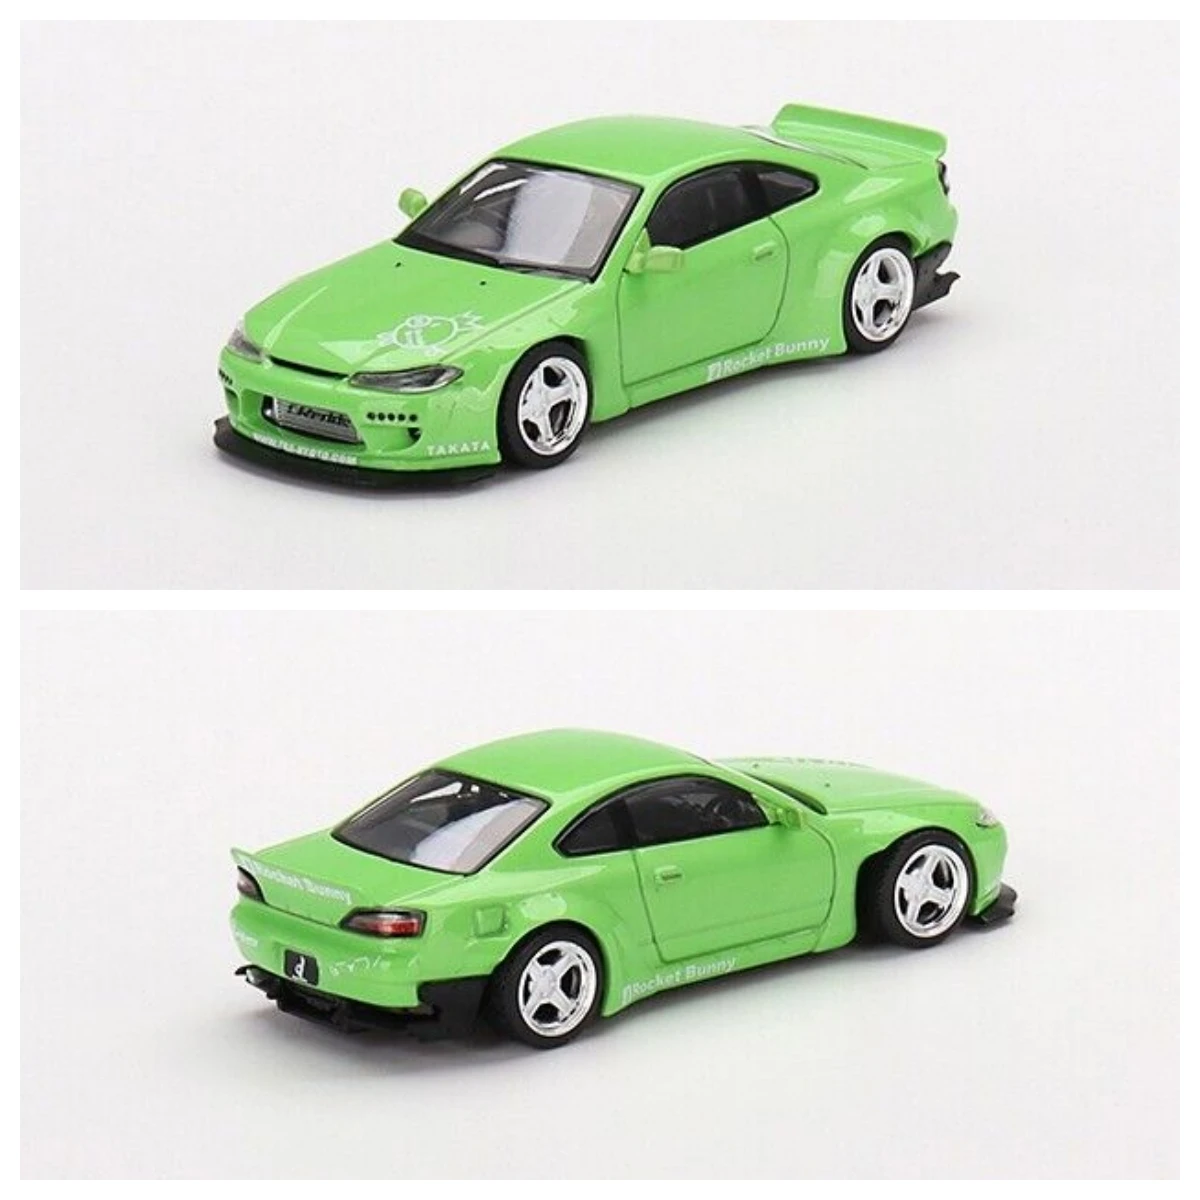 

Мини GT- 1/64 Силвия (S15) реактивный кролик зеленый RHD (MGT00500-R) Коллекционная модель автомобиля лимитированная коллекция хобби-игрушки